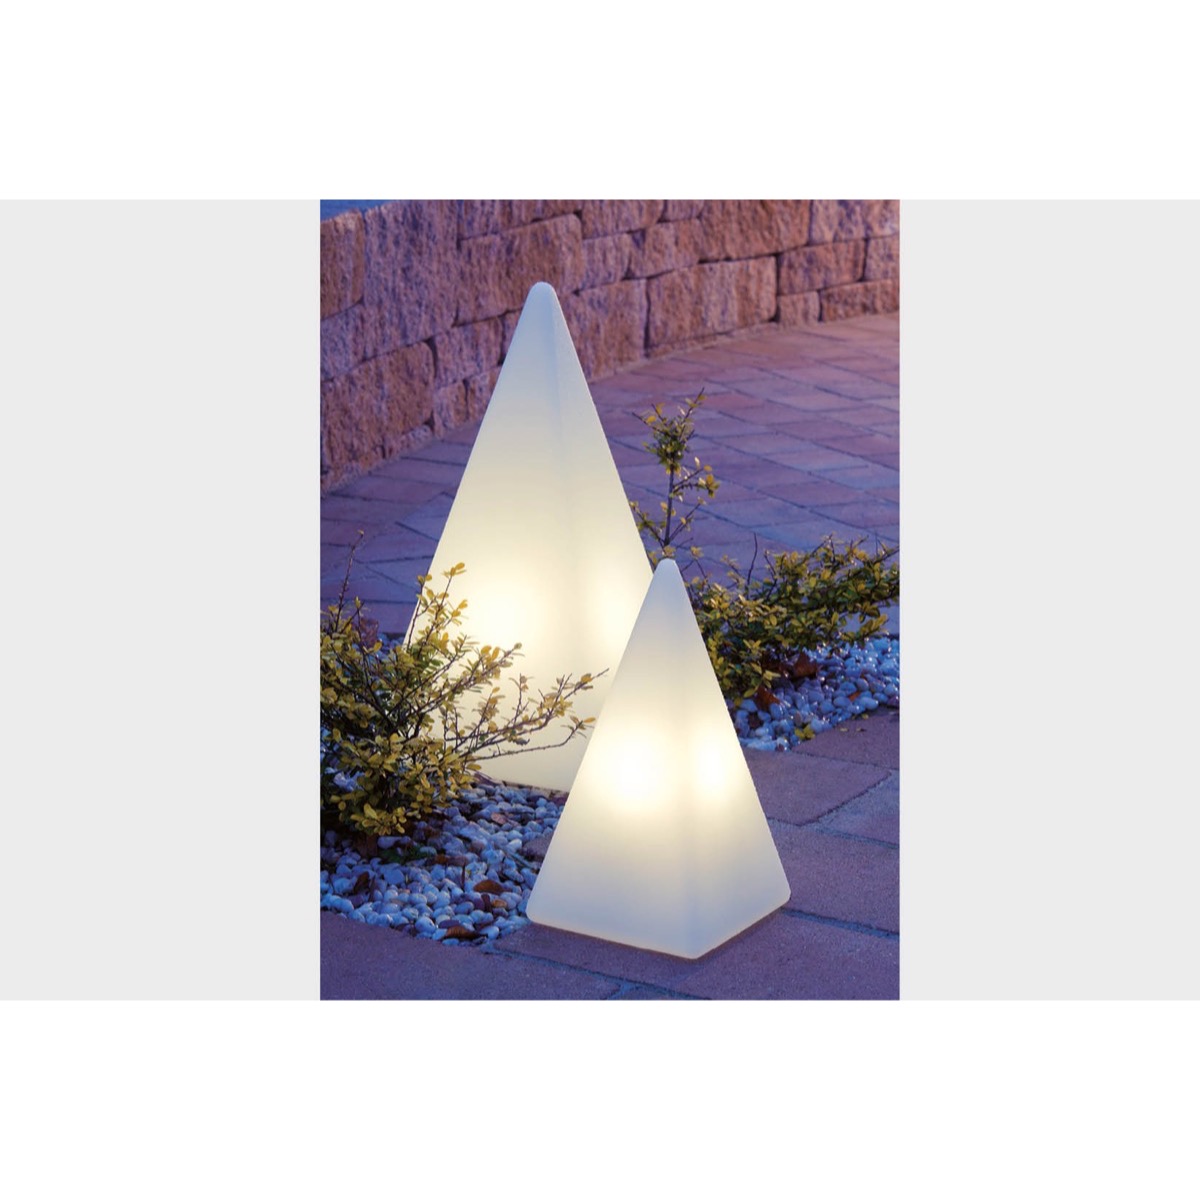 70405 Standleuchte Pyramide 36 cm der Firma EPSTEIN Design Leuchten